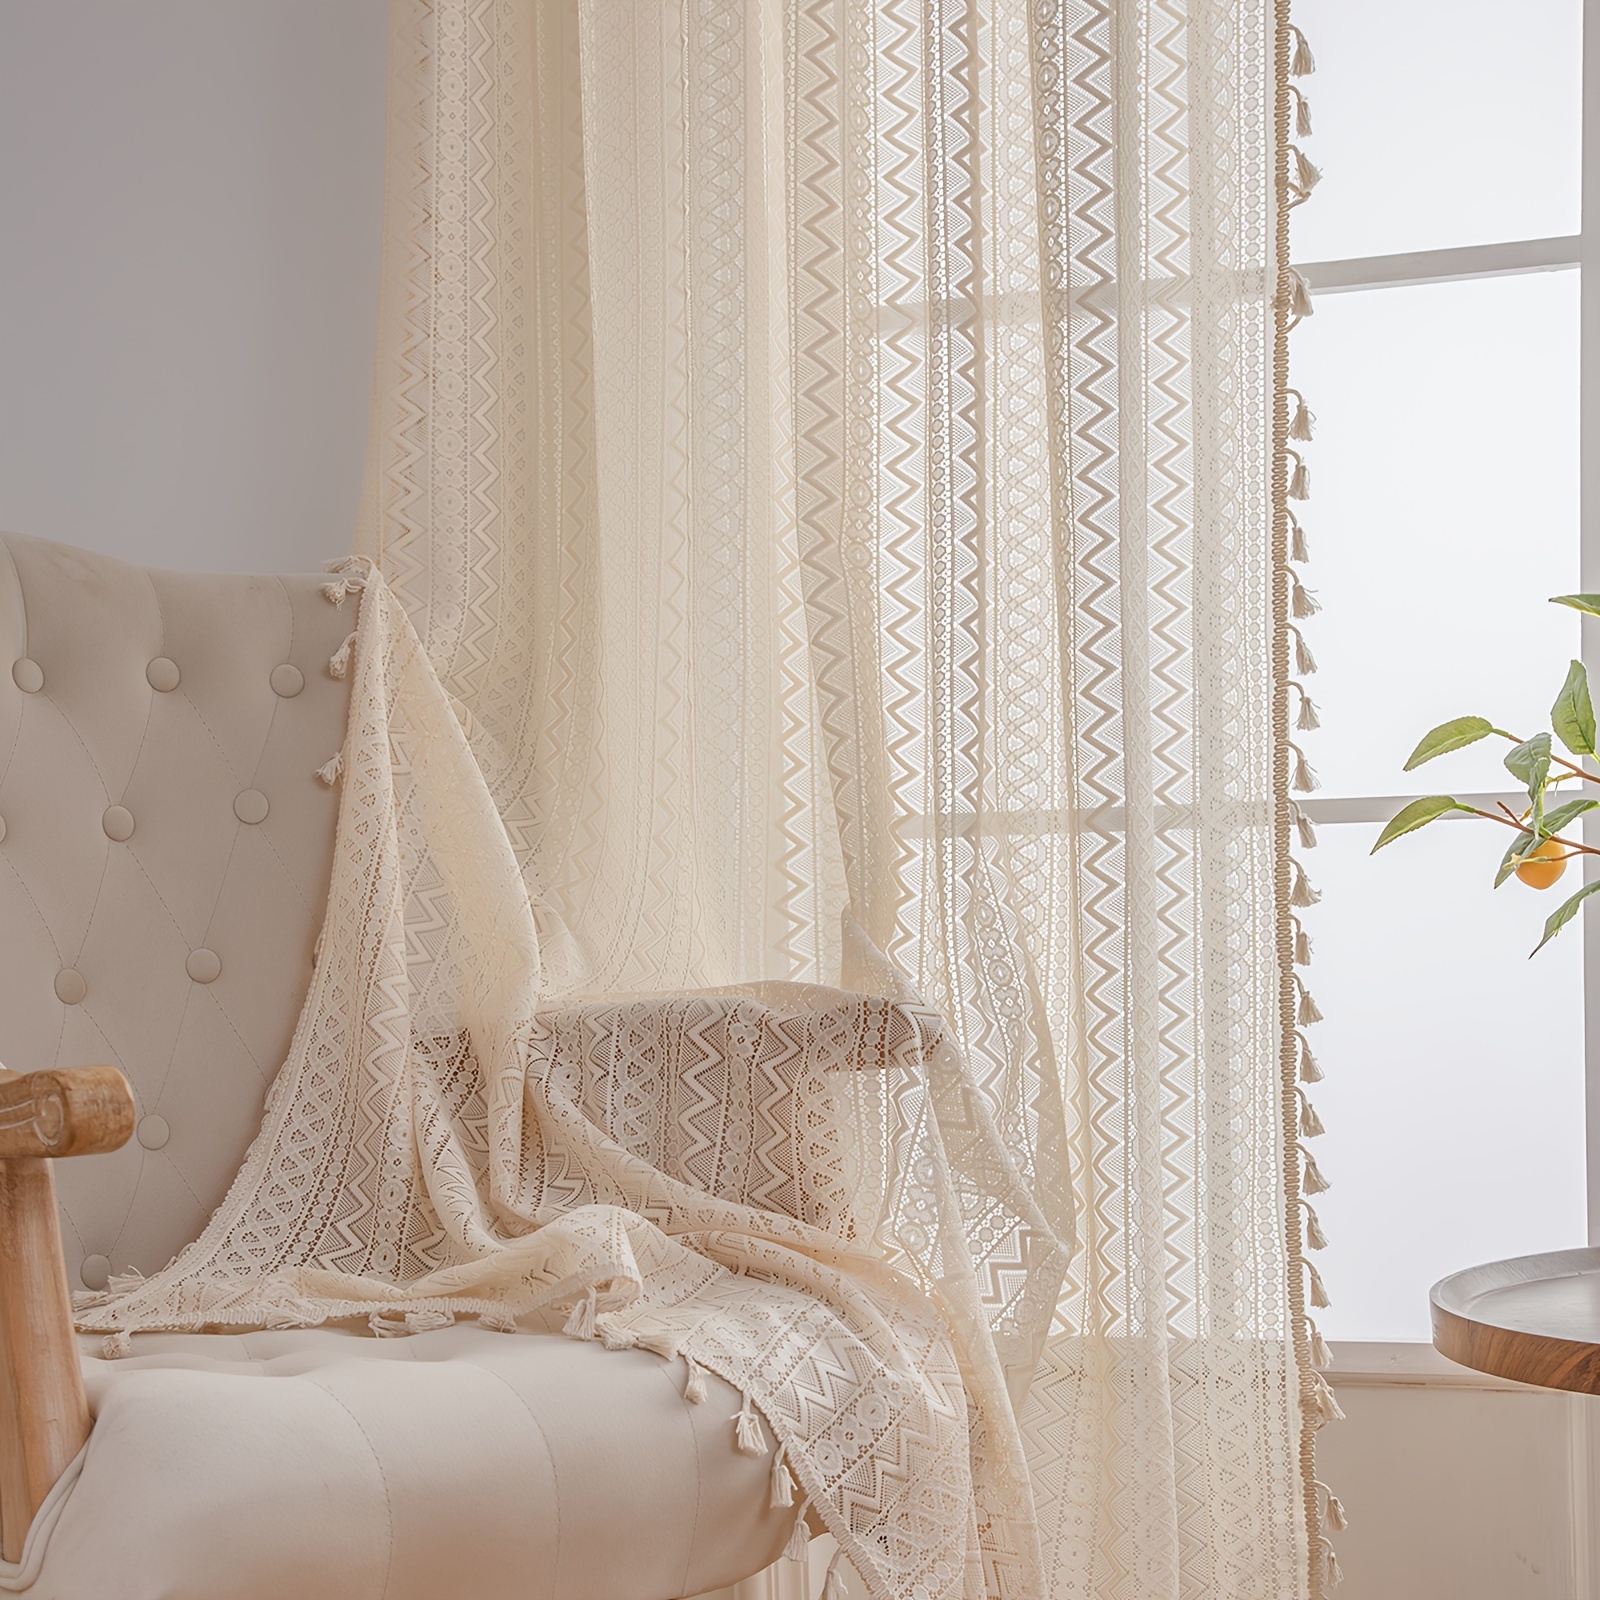 Cortinas beige para sala de estar, cortina semiopaca de algodón con borlas  de punto gofre para dormitorio/sala de estar, beige (bolsillo para barra)